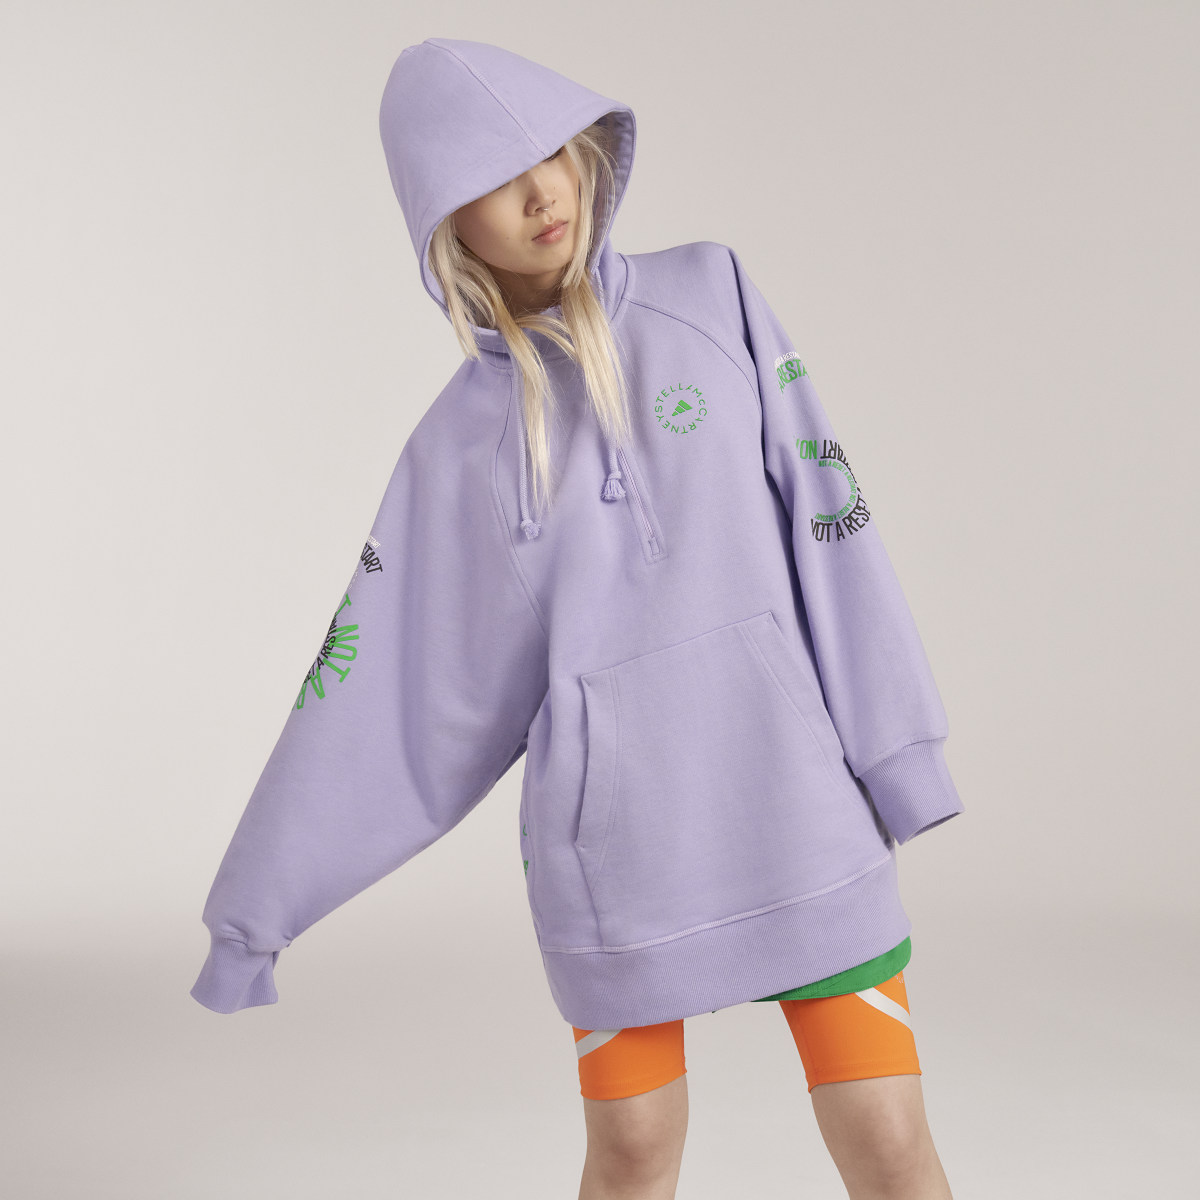 Adidas by Stella McCartney Pull On- Gender Neutral. 5